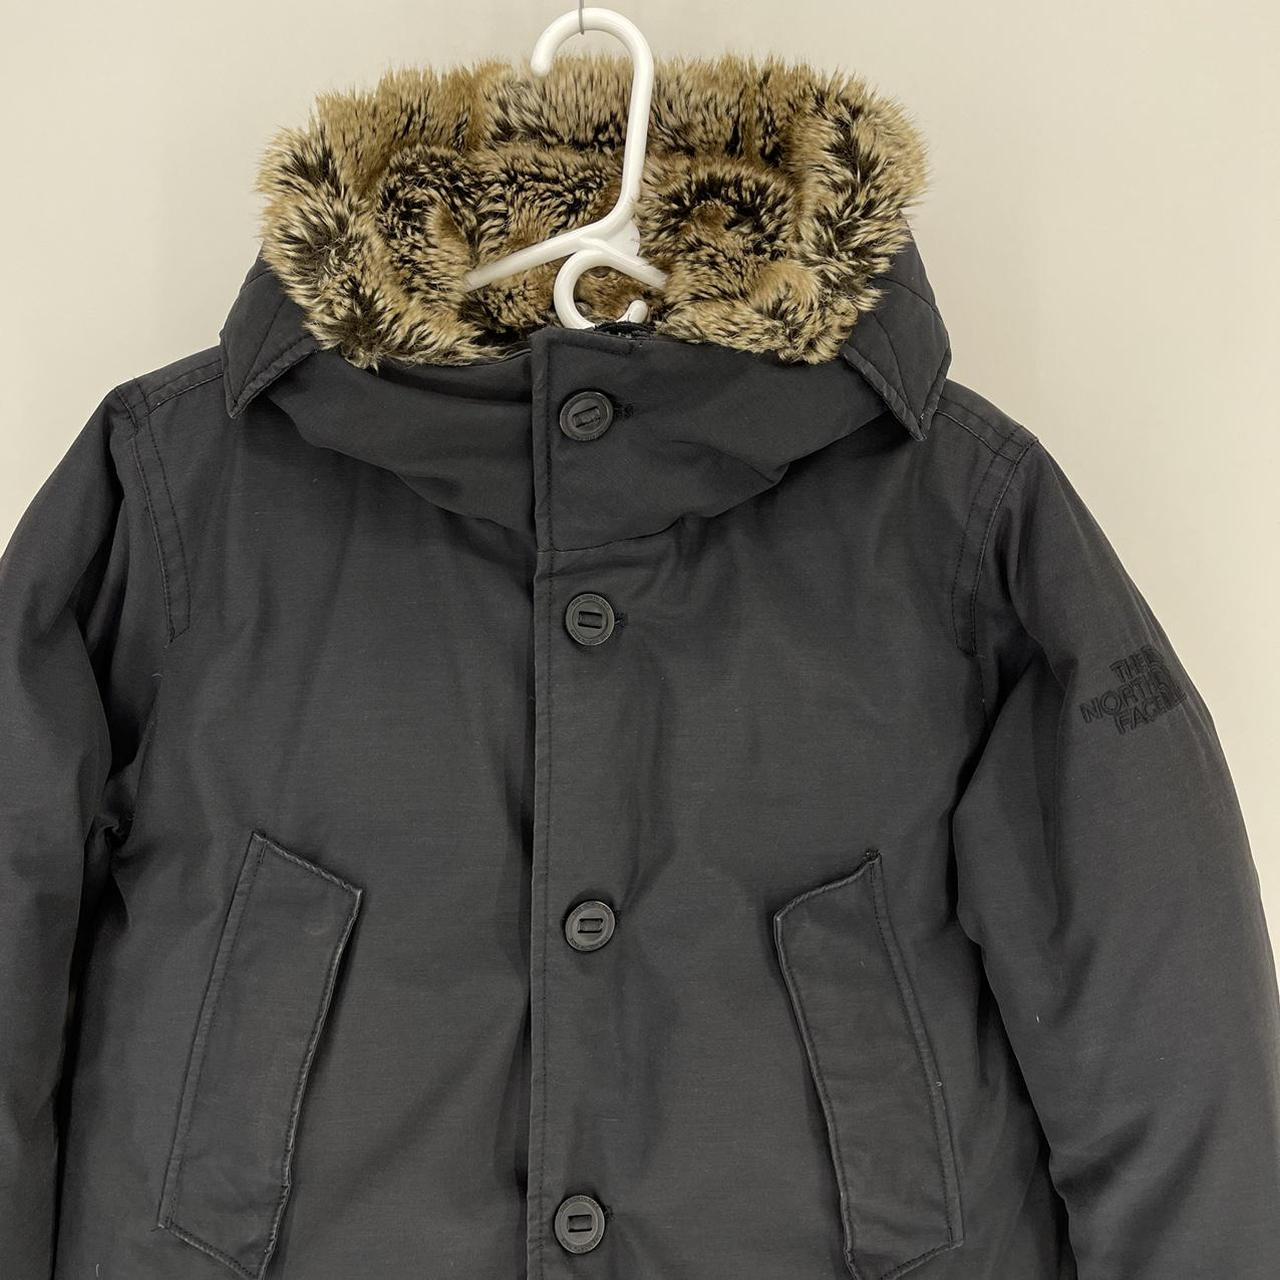 The North Face Vintage Puffer Jacket, black color,... - Depop